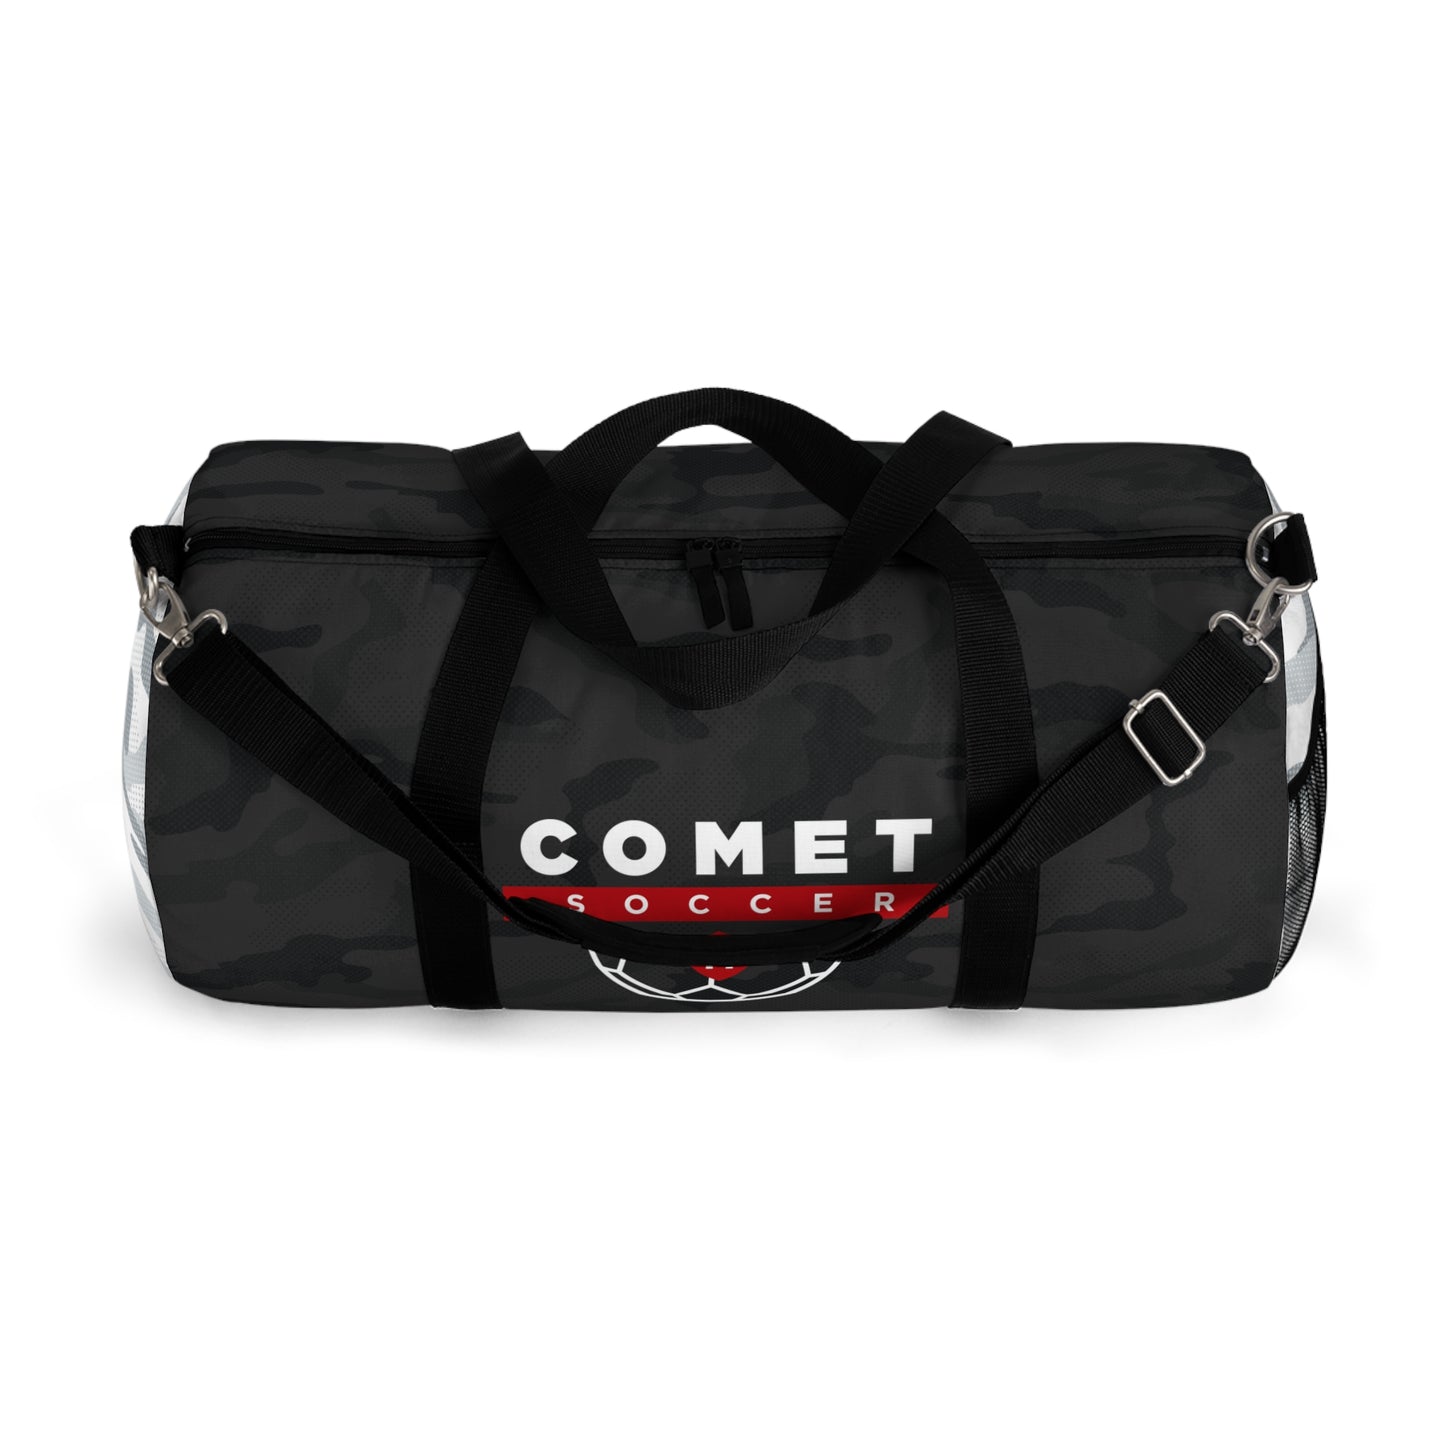 Comet Soccer - Duffel Bag